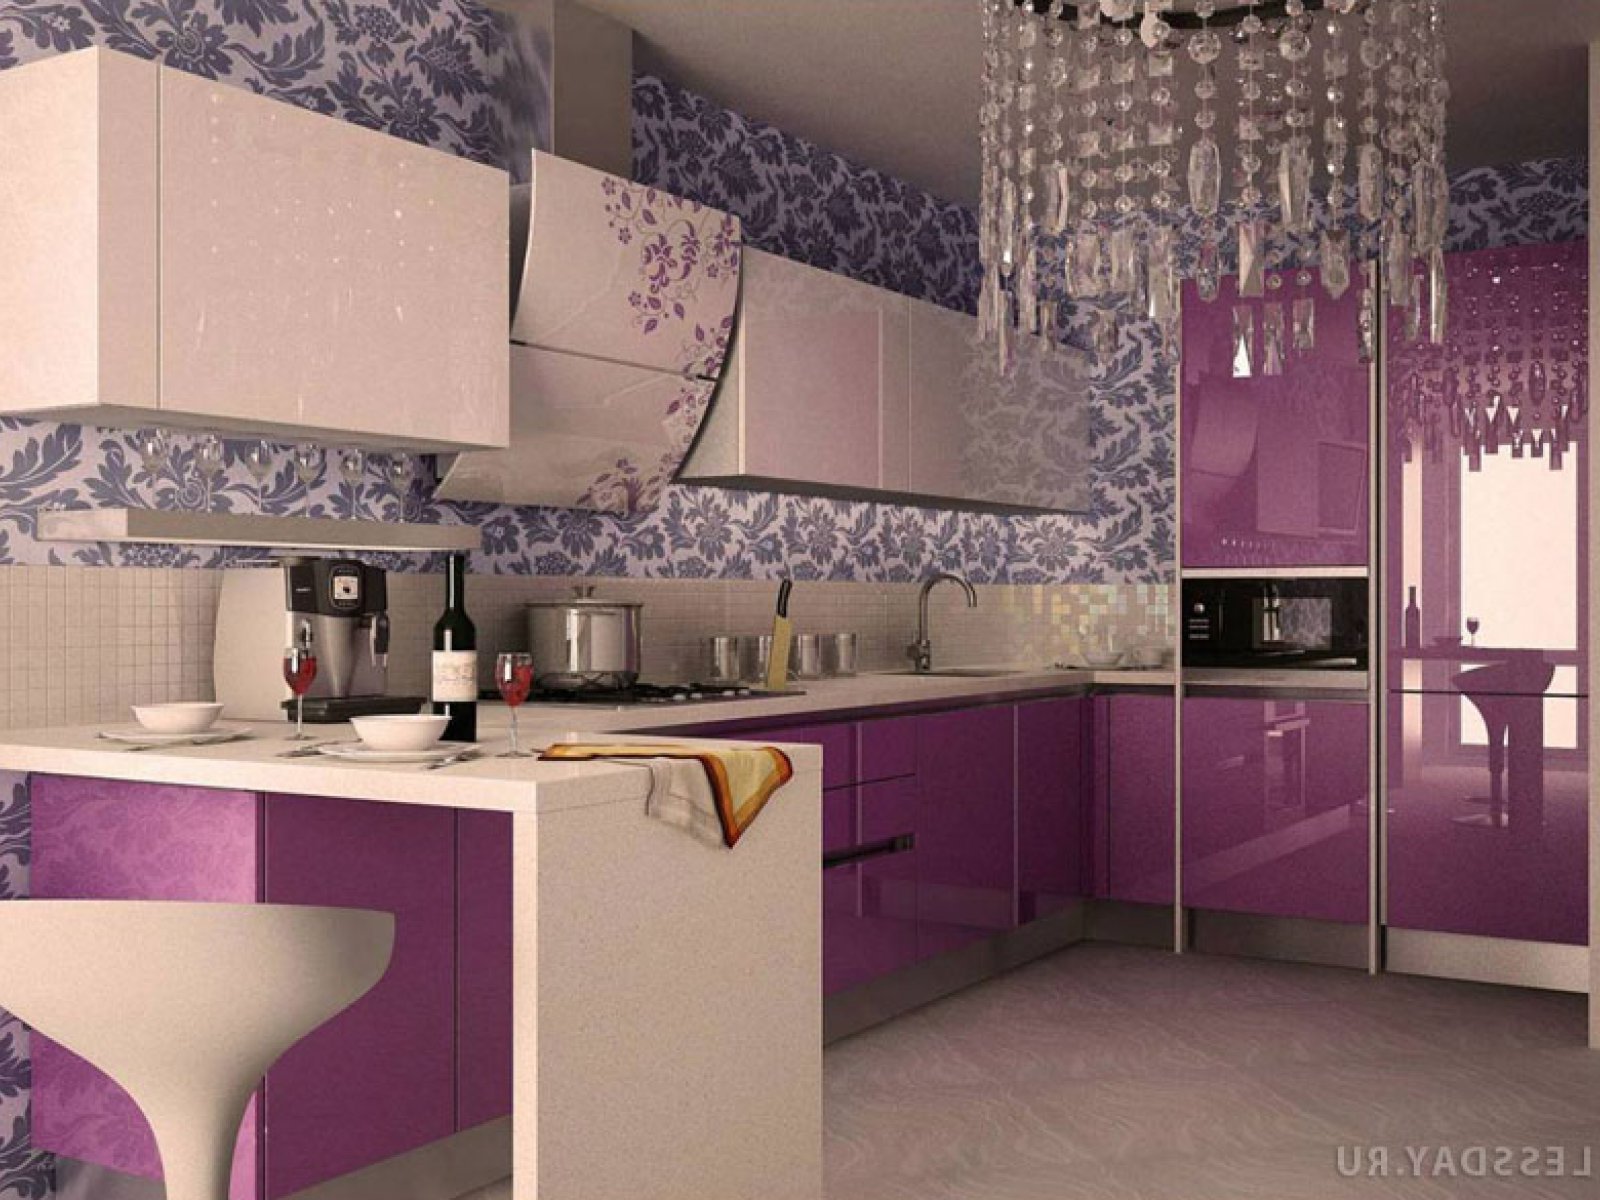 Какие красивые кухни. Интерьер кухни в сиреневых тонах. Кухня в фиолетовом цвете. Кухня в сиреневых тонах. Кухня в сиреневом цвете.